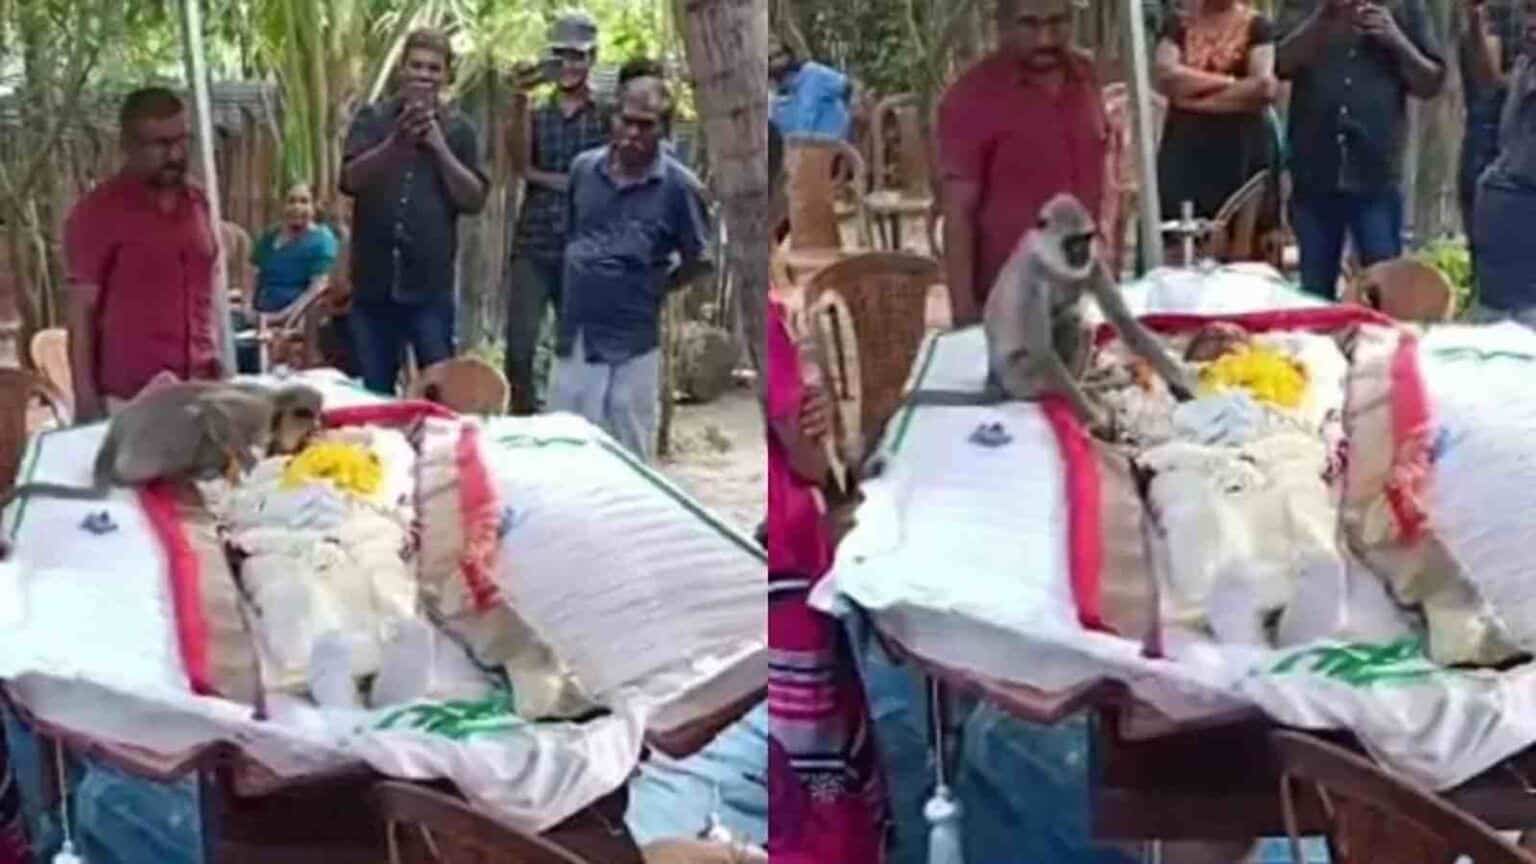 Amigos e familiares prestavam as últimas homenagens a Peethambaram Rajan, de 56 anos, quando o macaco apareceu e interagiu com o falecido